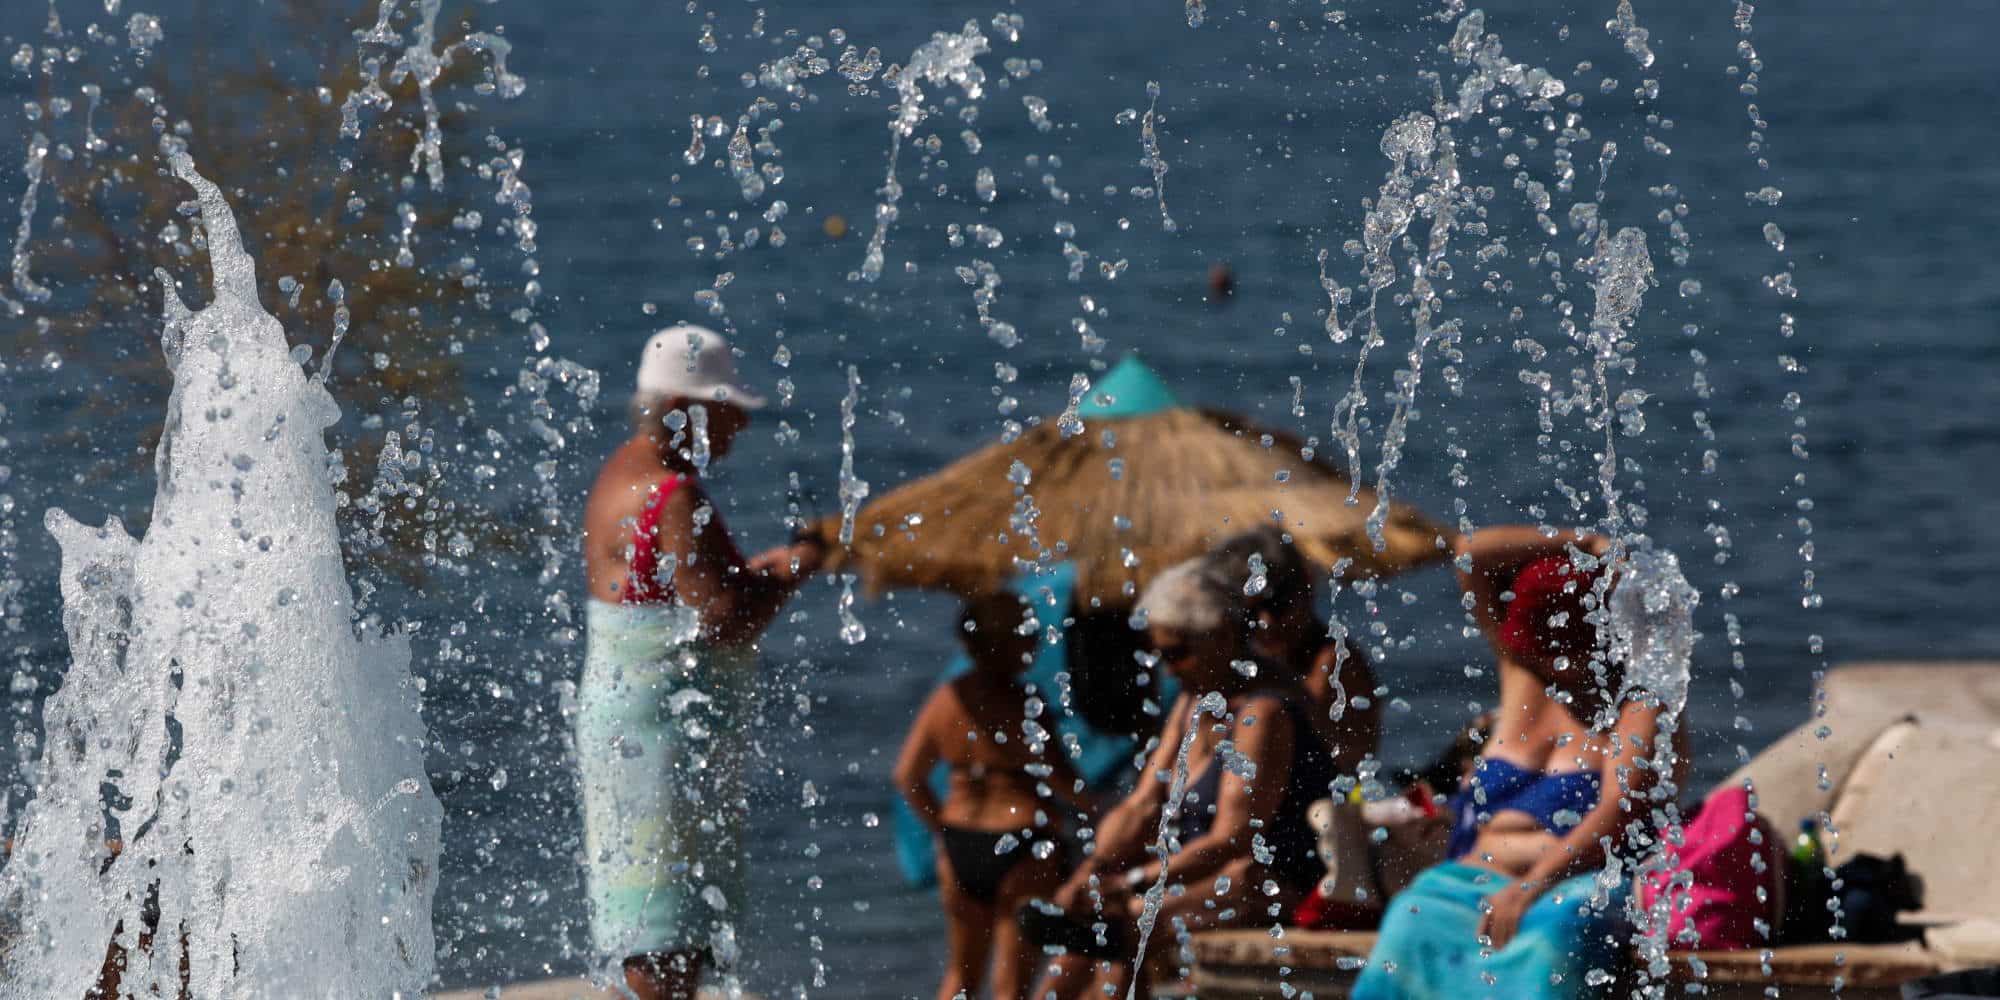 Ζεστός ο καιρός στην Αττική, πολίτες δροσίζονται στην παραλία του Παλαιού Φαλήρου